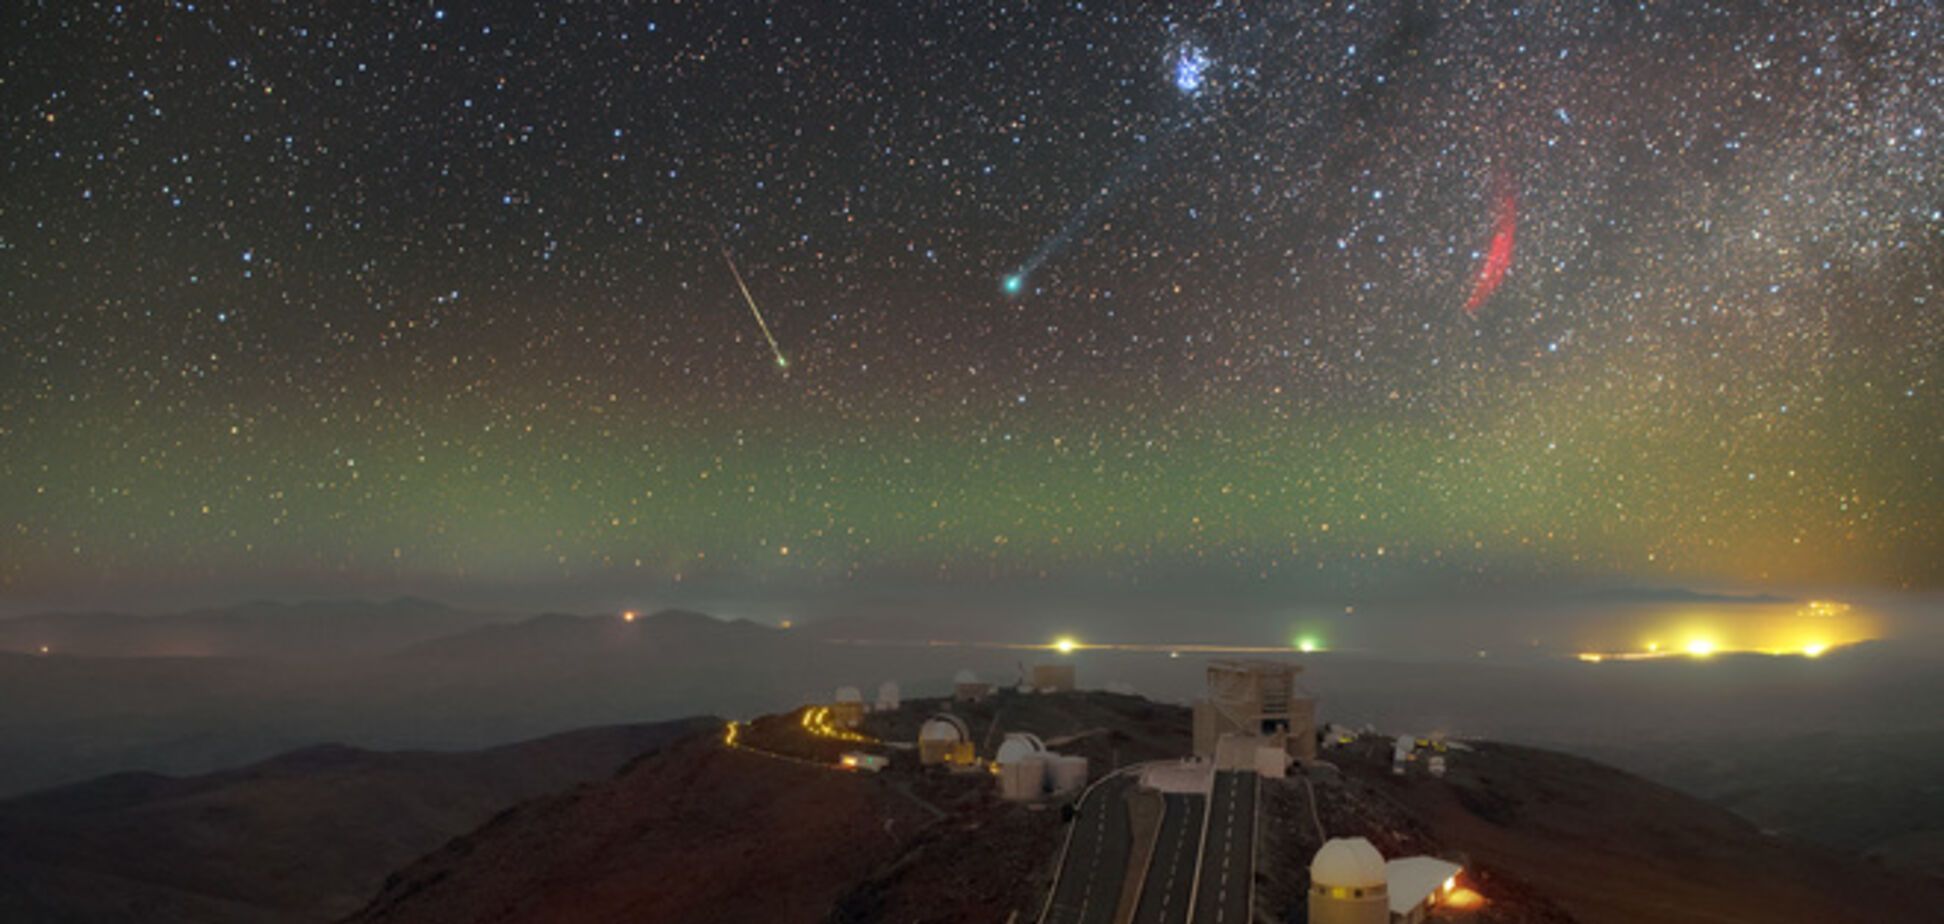 Астрофотограф заснял в небе удивительную плеяду звездных светил